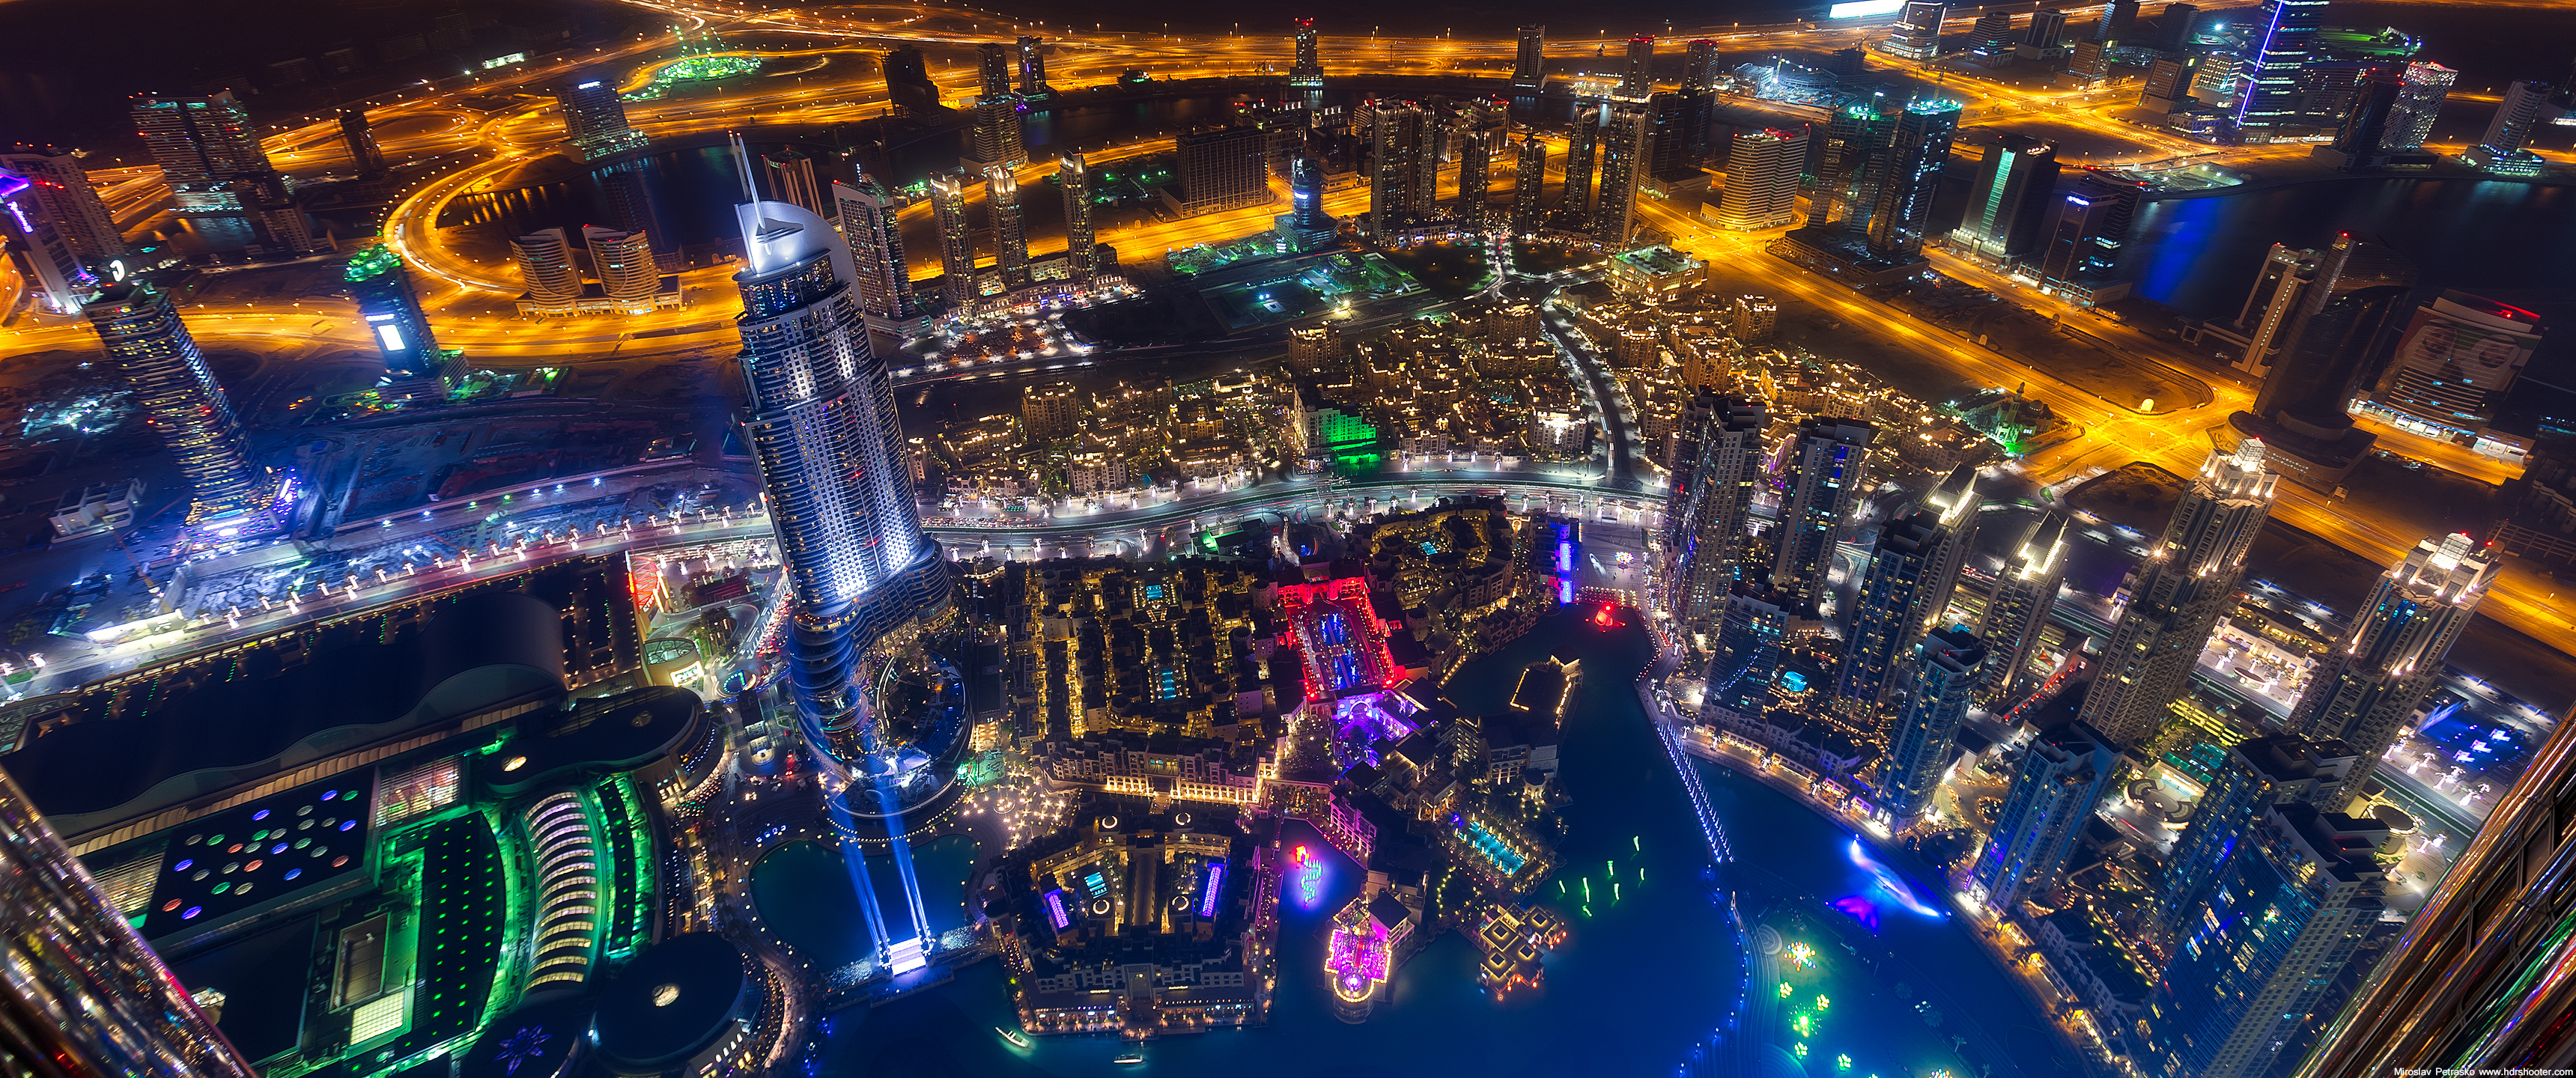 Dubai vào ban đêm là một thế giới khác. Với những tòa nhà cao chọc trời, đèn neon lung linh và các hoạt động giải trí đầy màu sắc, bạn sẽ không muốn bỏ qua bất kỳ bức ảnh nào của thành phố này vào ban đêm. Hãy tận hưởng thế giới ảo tuyệt đẹp này.